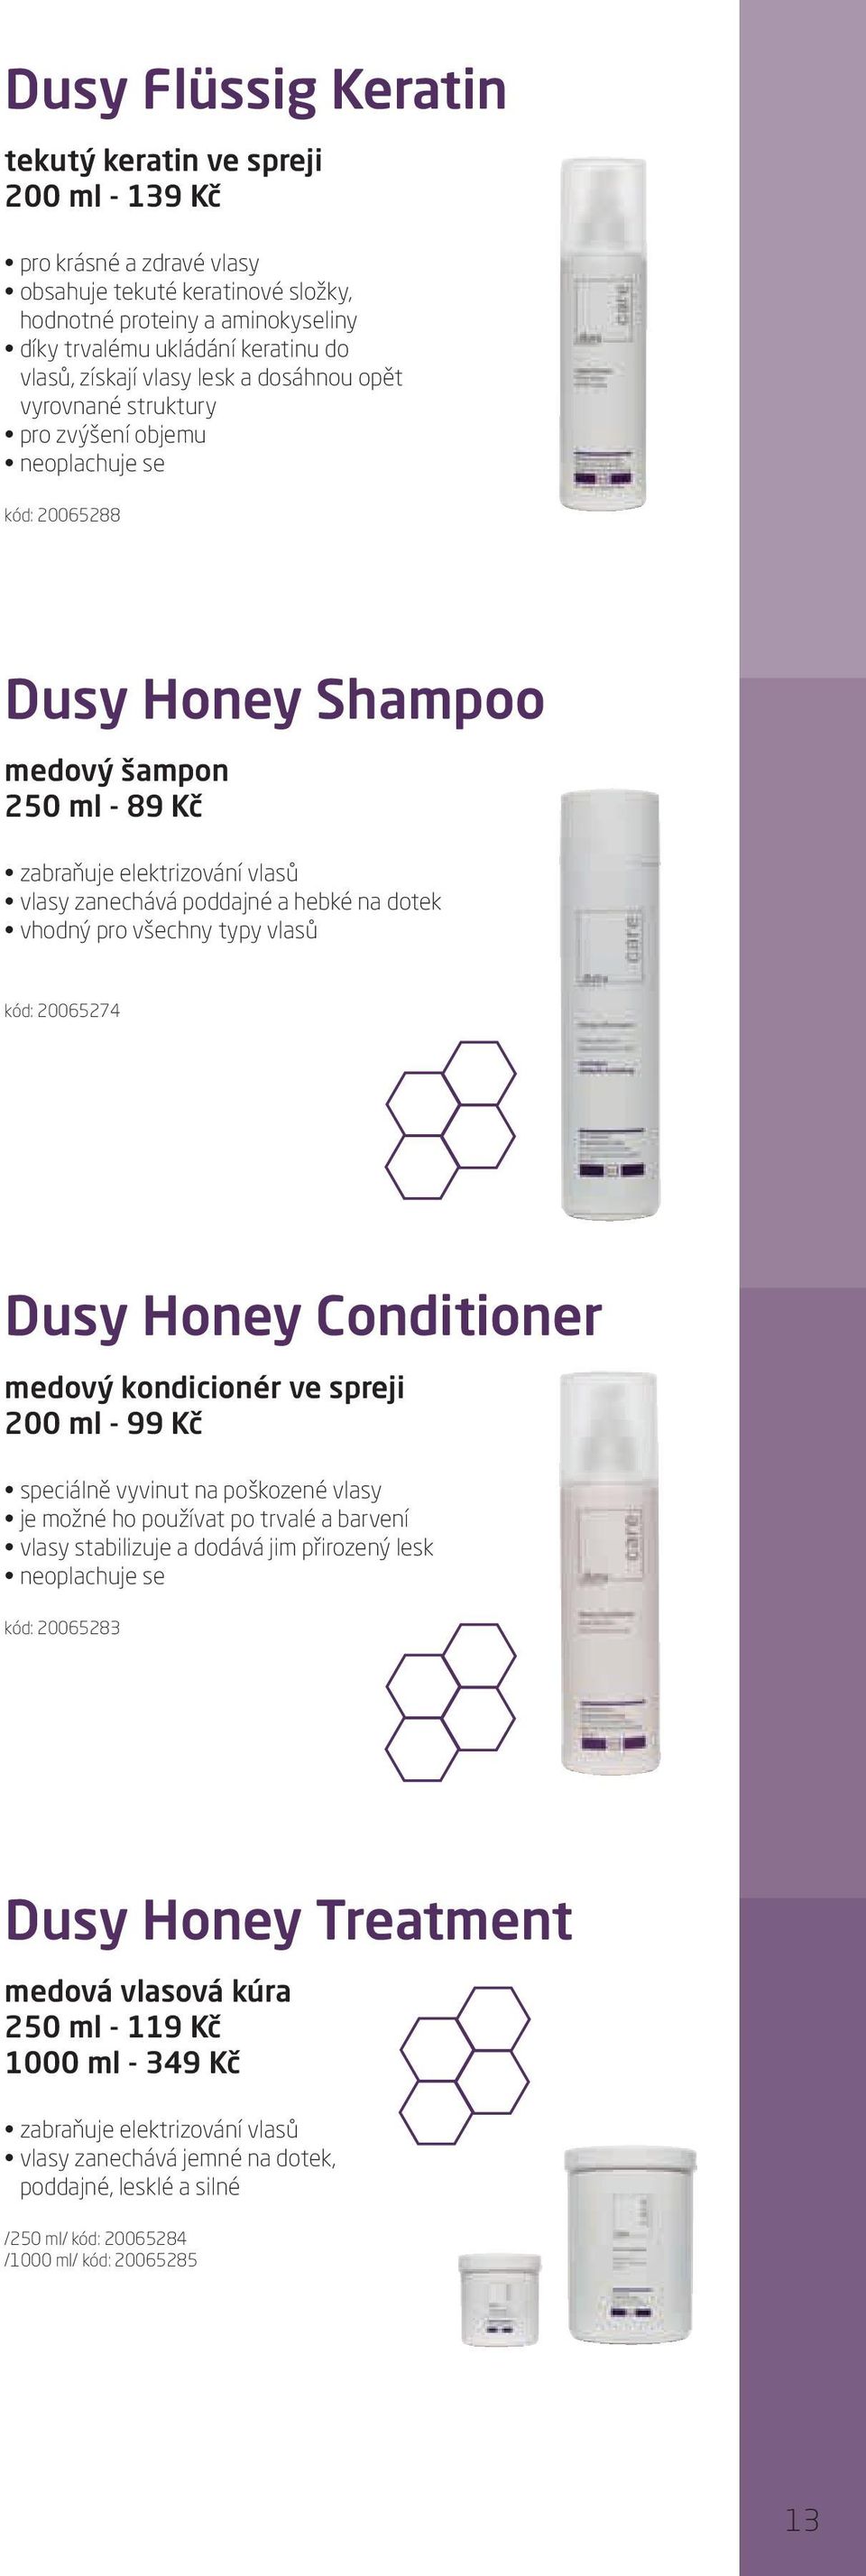 poddajné a hebké na dotek vhodný pro všechny typy vlasů kód: 20065274 Dusy Honey Conditioner medový kondicionér ve spreji 200 ml - 99 Kč speciálně vyvinut na poškozené vlasy je možné ho používat po